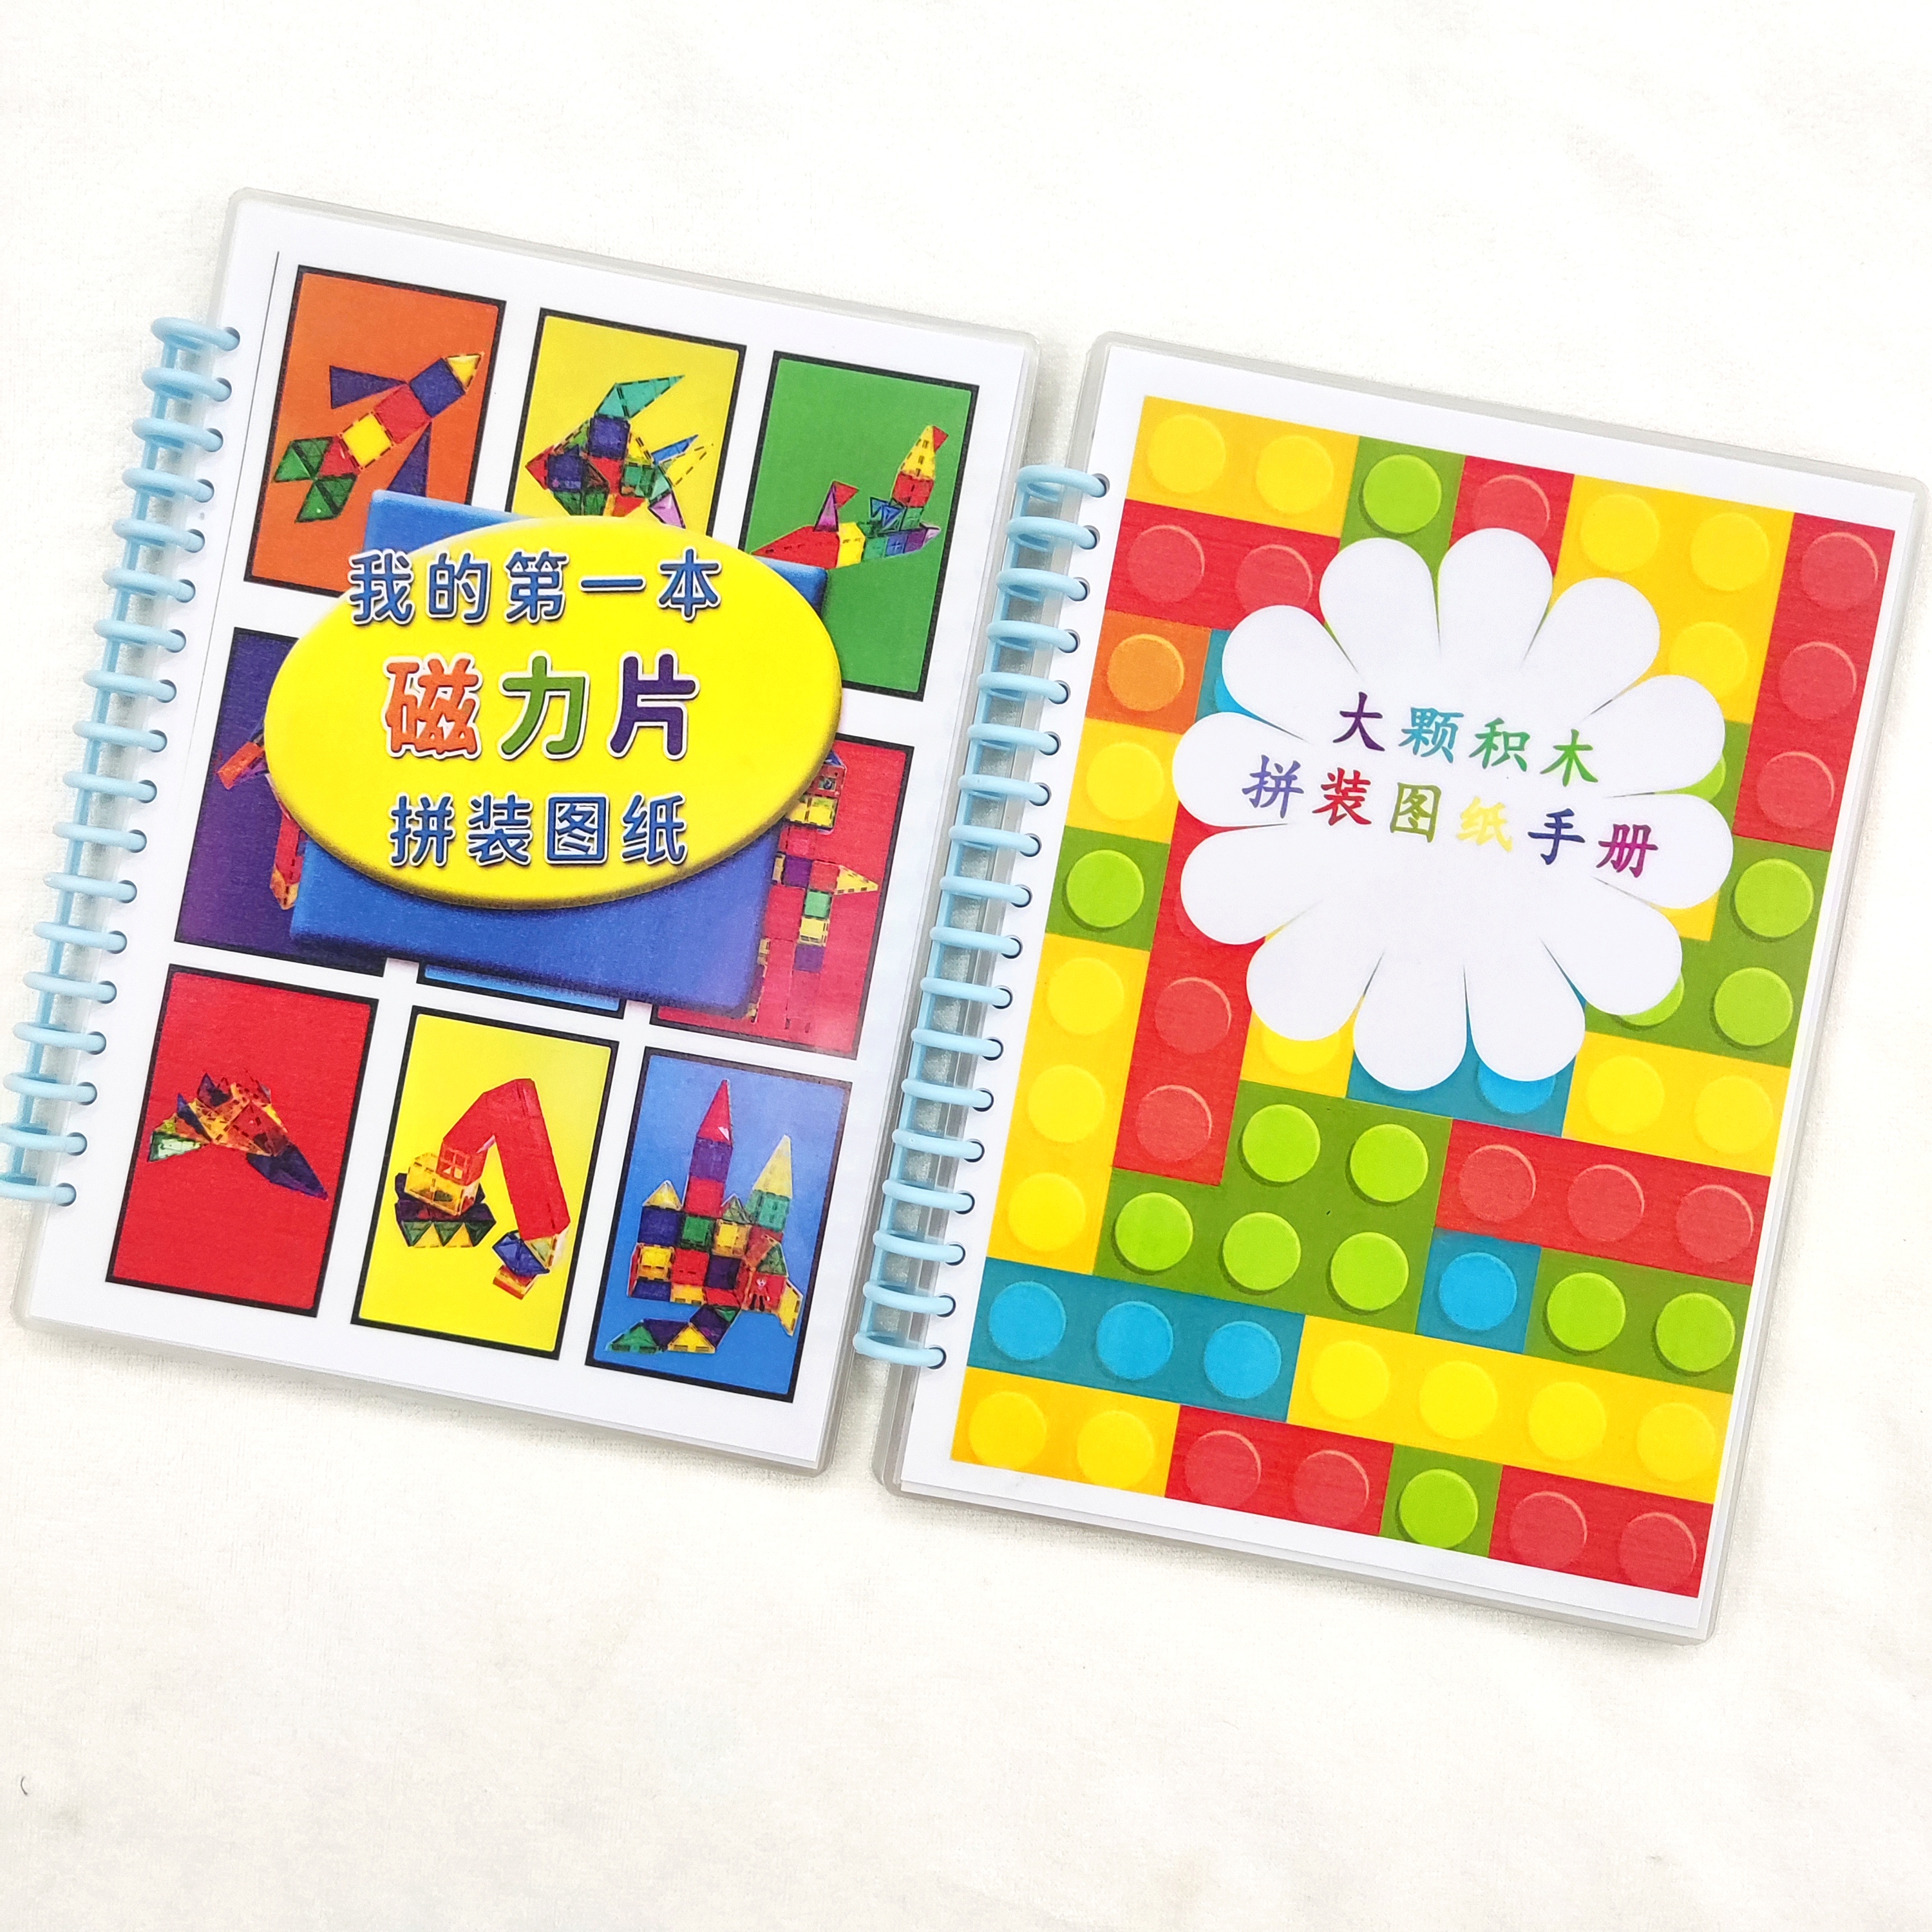 兼容乐高搭建图纸 大颗粒积木 卡片教具教程益智拼装儿童玩具手册